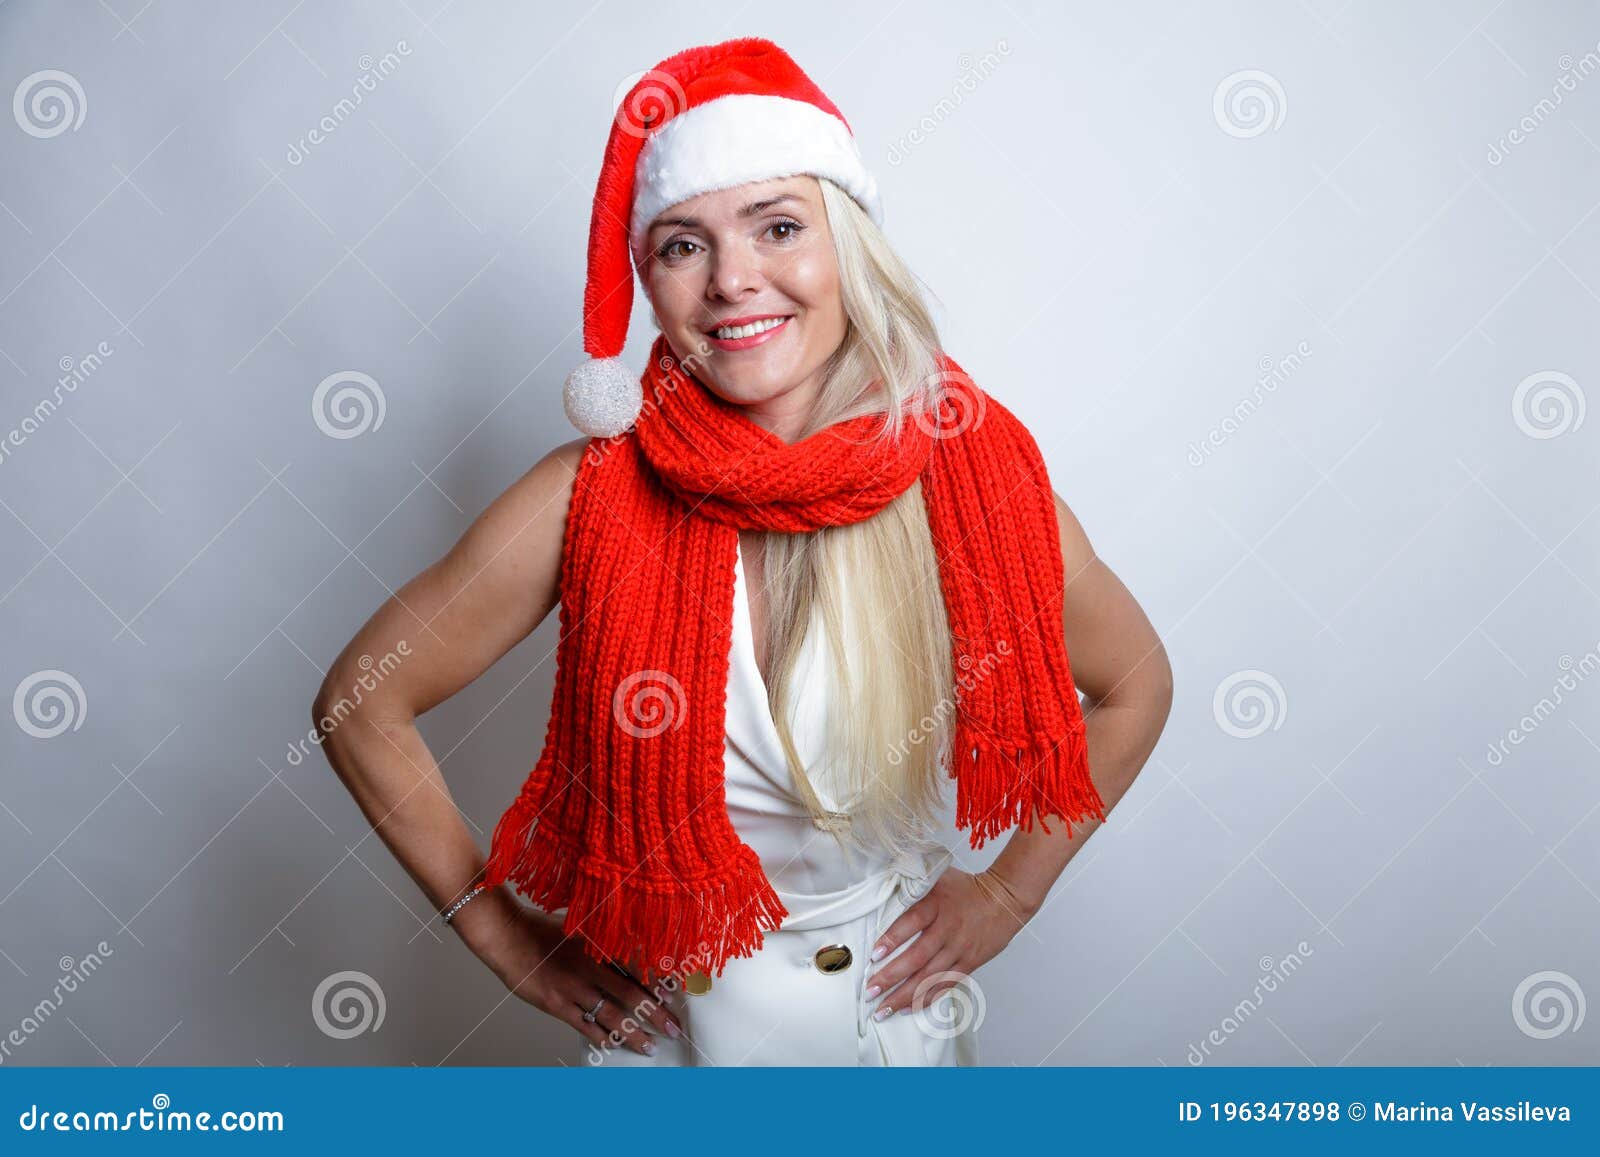 Bonita Rubia, Con Un Traje Blanco Con Una Bufanda Roja Y Un Sombrero De Santa, Posando Frente a La Cámara, Luz Del Estudio Foto de archivo - Imagen de fondo: 196347898